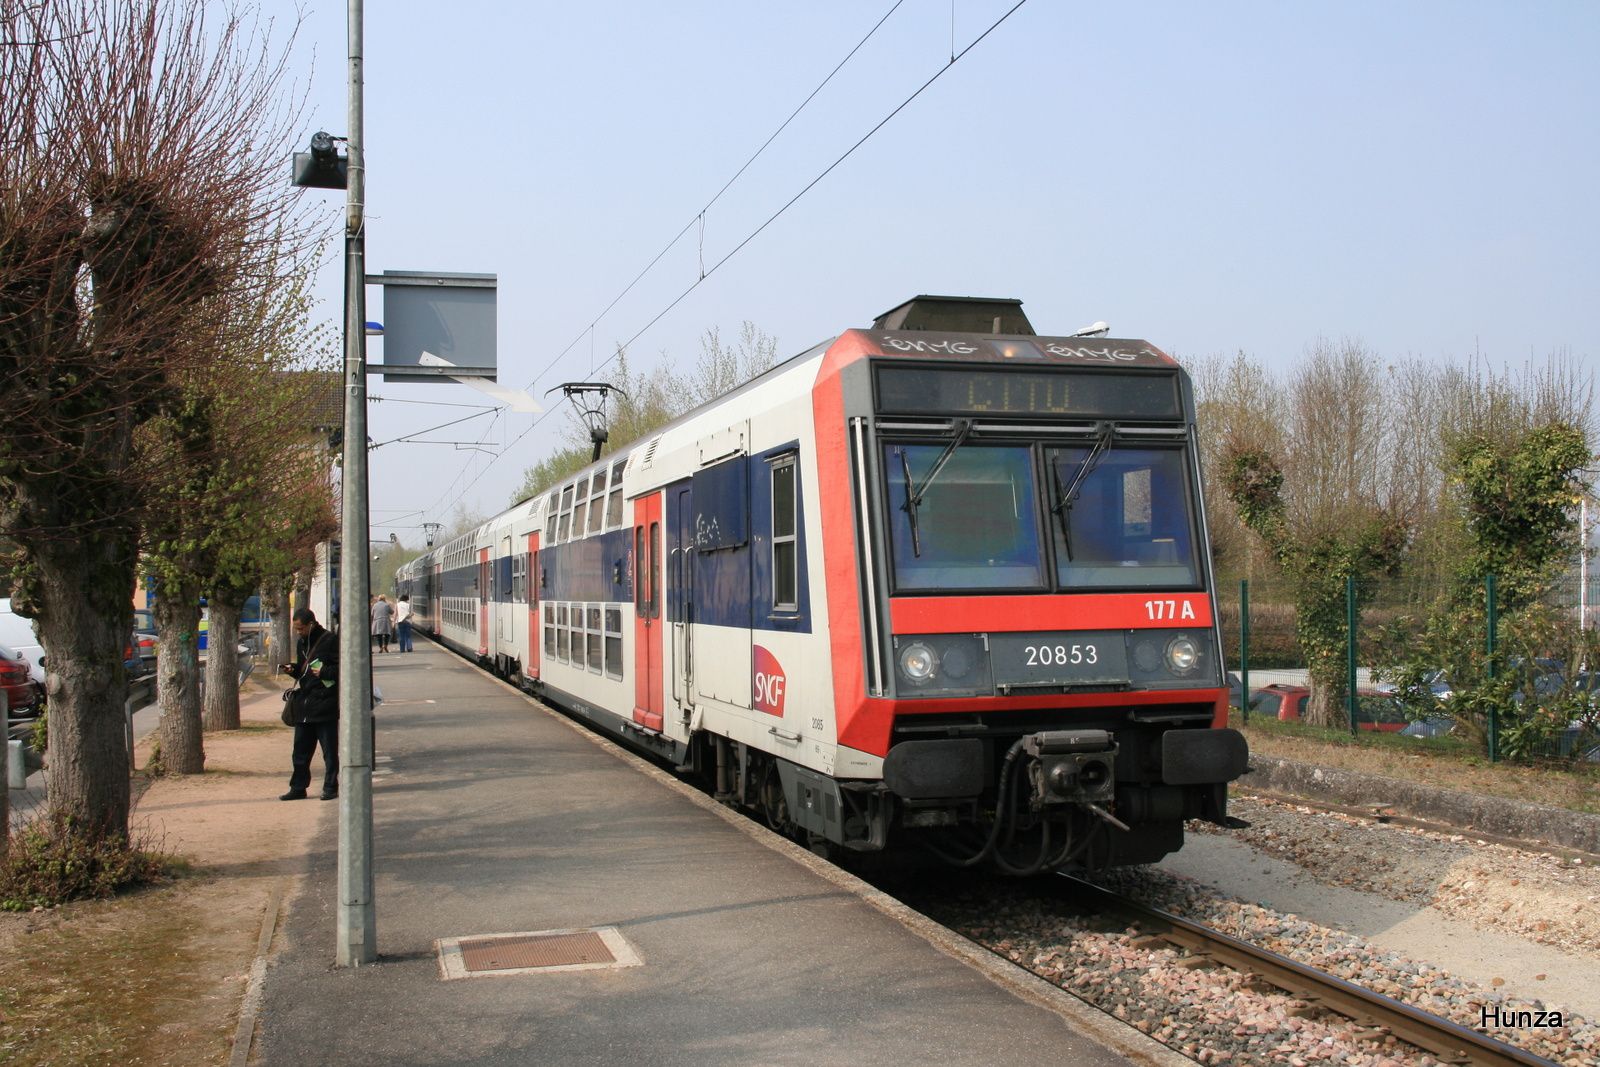 Faremoutiers Pommeuse : train ligne P à destination de Coulommiers assuré en Z 20853 (22 avril 2012)